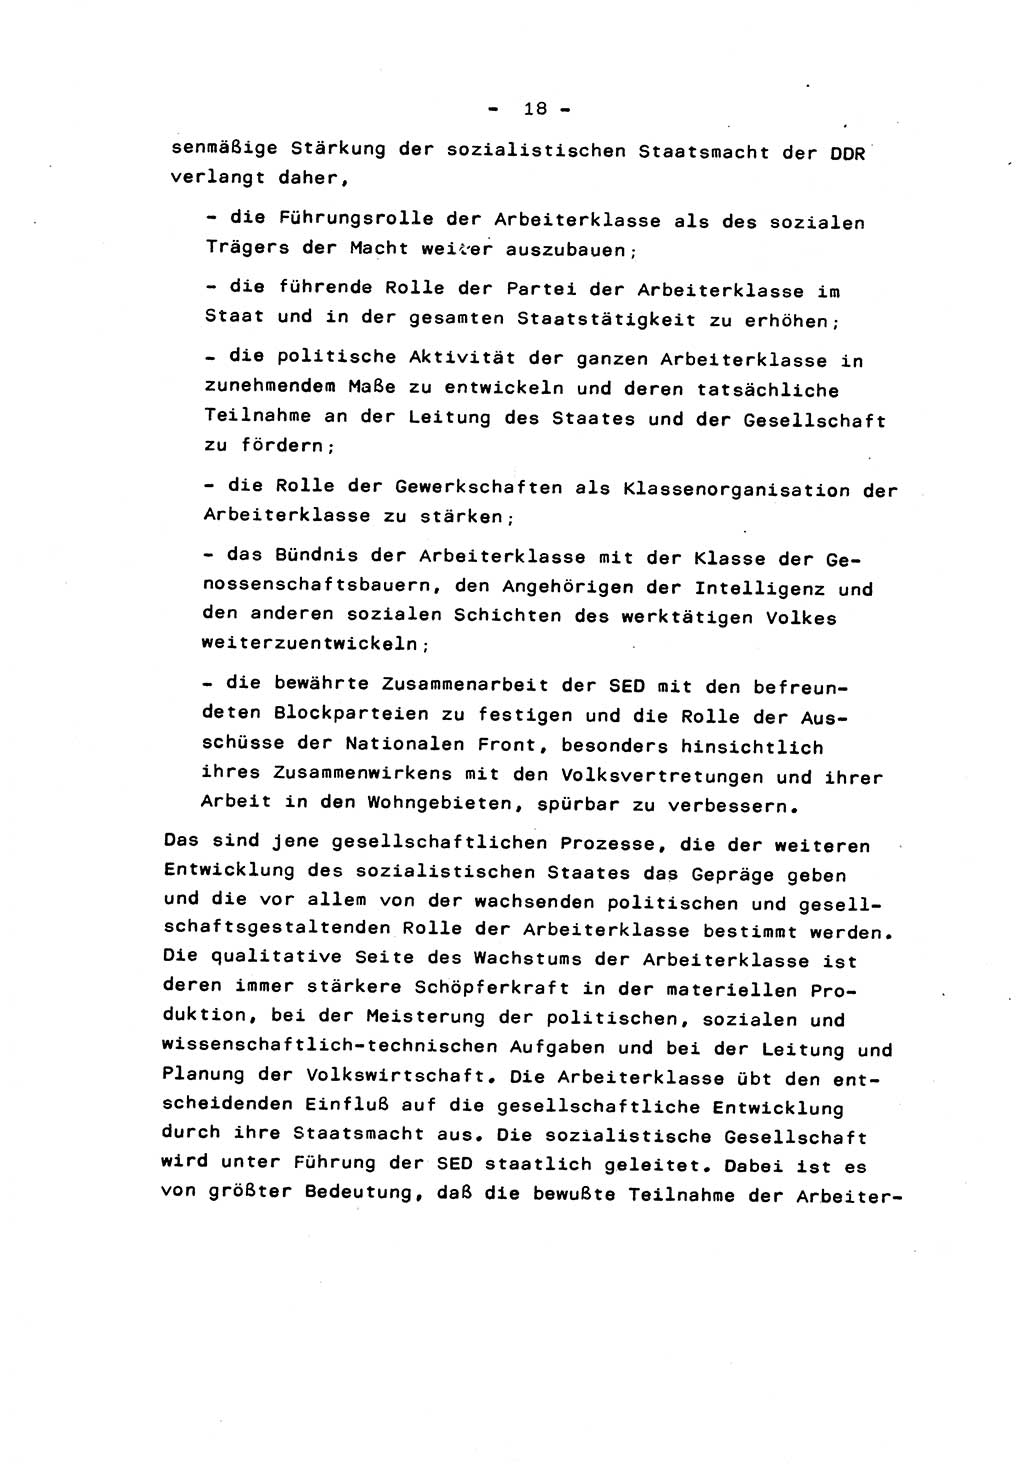 Marxistisch-leninistische Staats- und Rechtstheorie [Deutsche Demokratische Republik (DDR)] 1975, Seite 18 (ML St.-R.-Th. DDR 1975, S. 18)